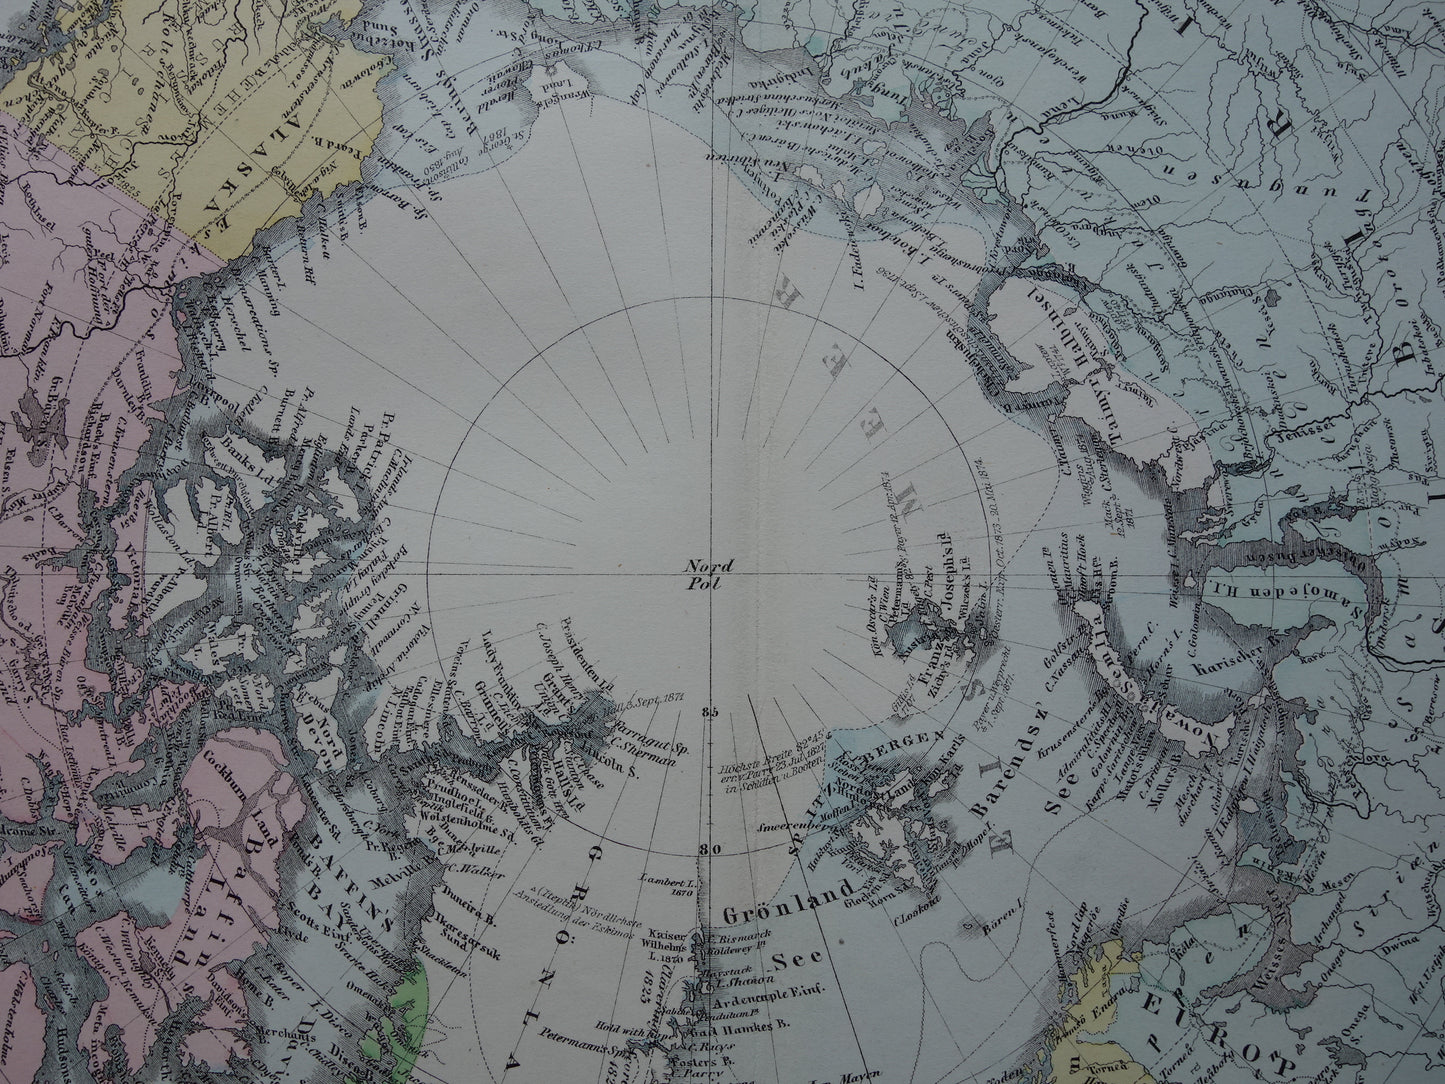 NOORDPOOL oude landkaart van het Noordpoolgebied 1876 originele antieke Duitse kaart van de Arctische regio Groenland poolexpedities